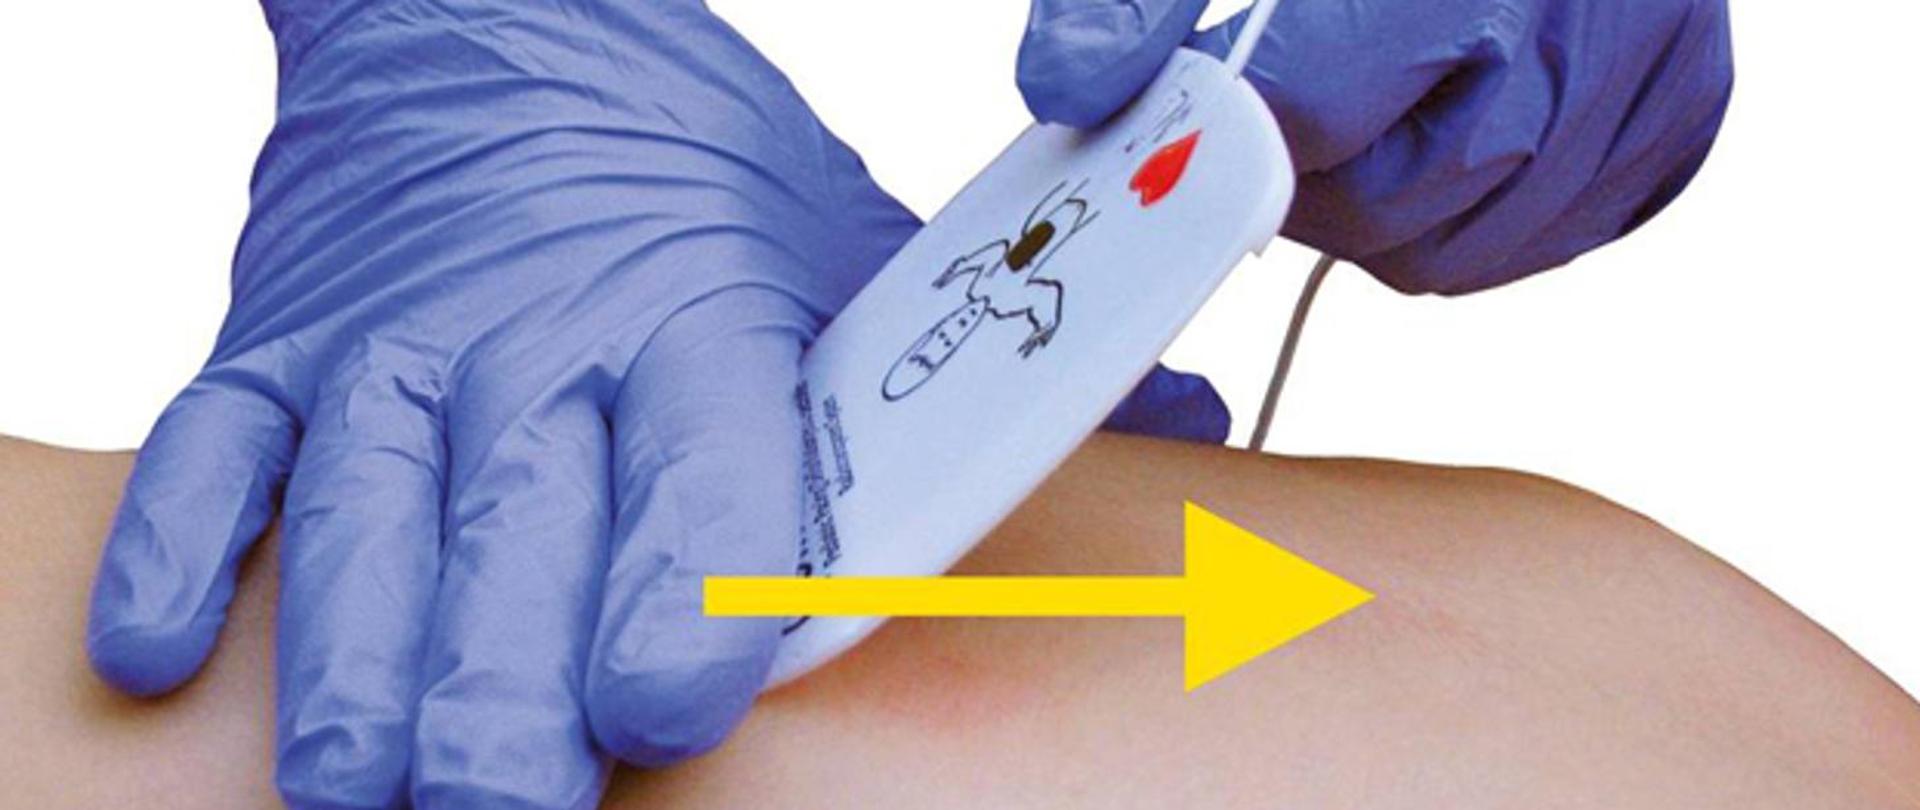 Zdjęcie przedstawia czynność przyklejania elektrody automatycznego defibrylatora zewnętrznego do klatki piersiowej osoby poszkodowanej. Czynność na zdjęciu wykonywana jest w rękawiczkach nitrylowych.